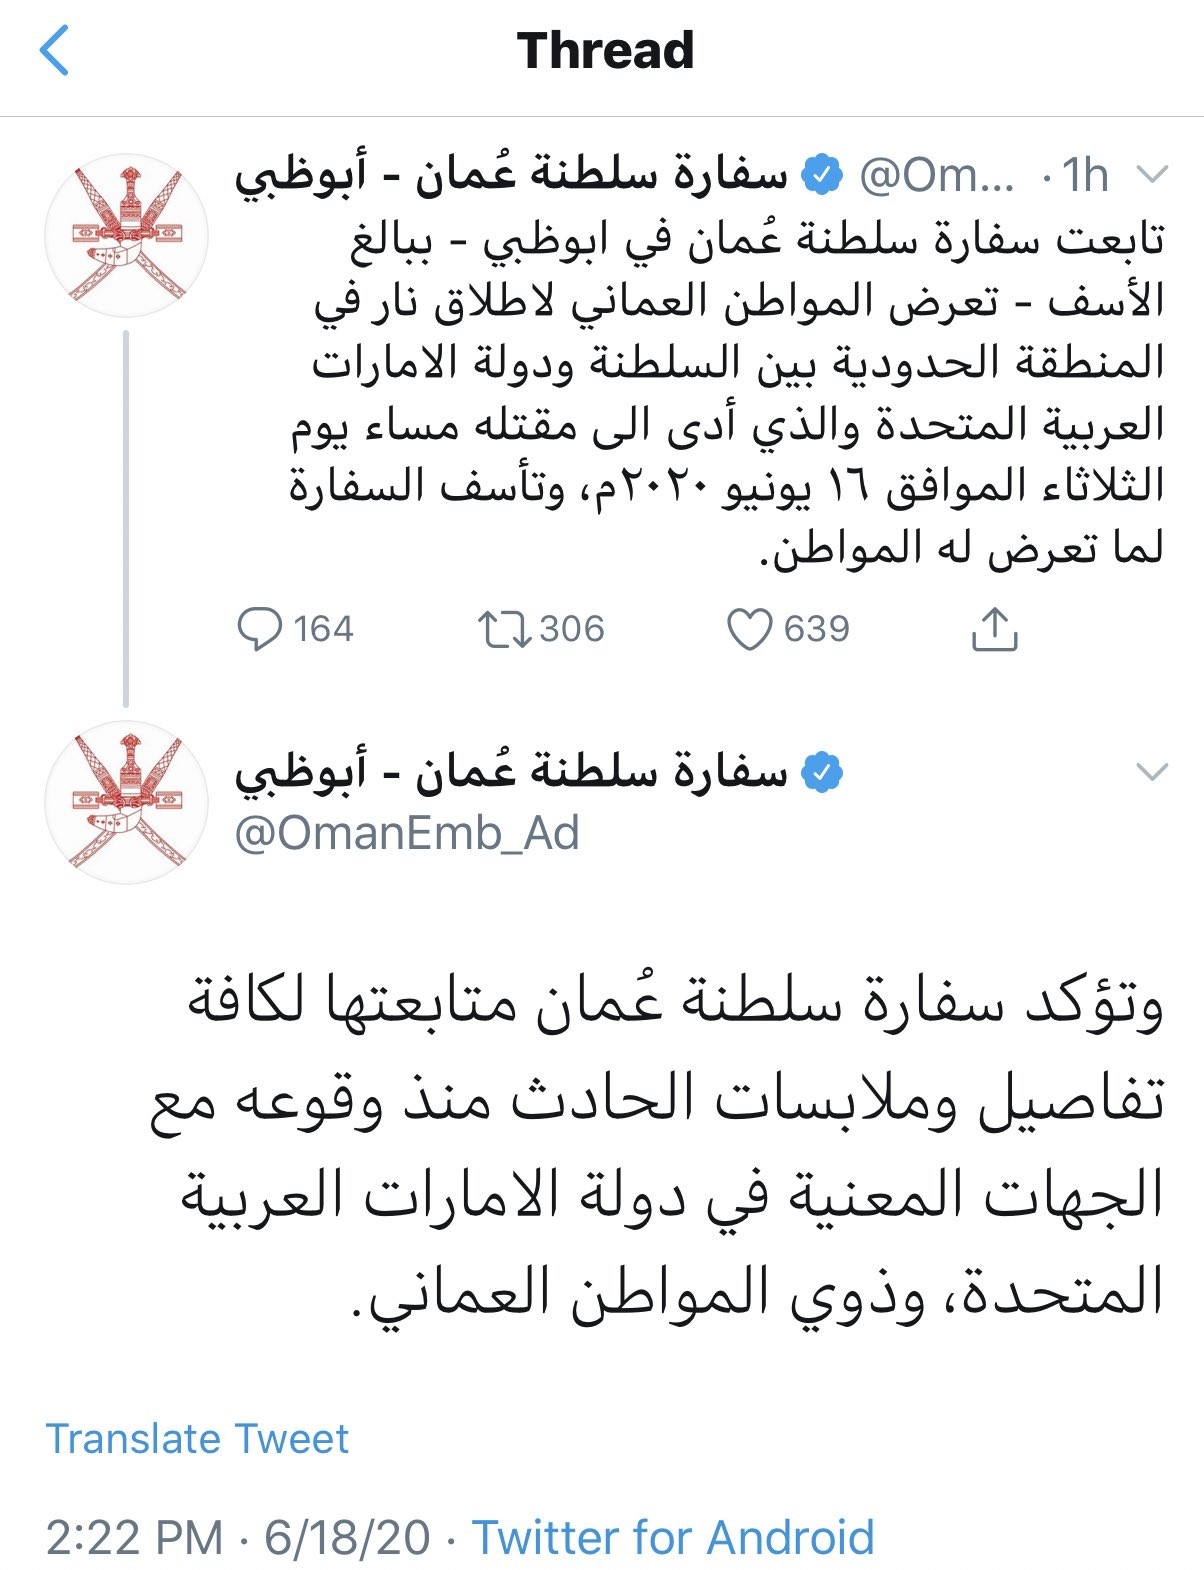 وفاة مواطن عماني في الإمارات